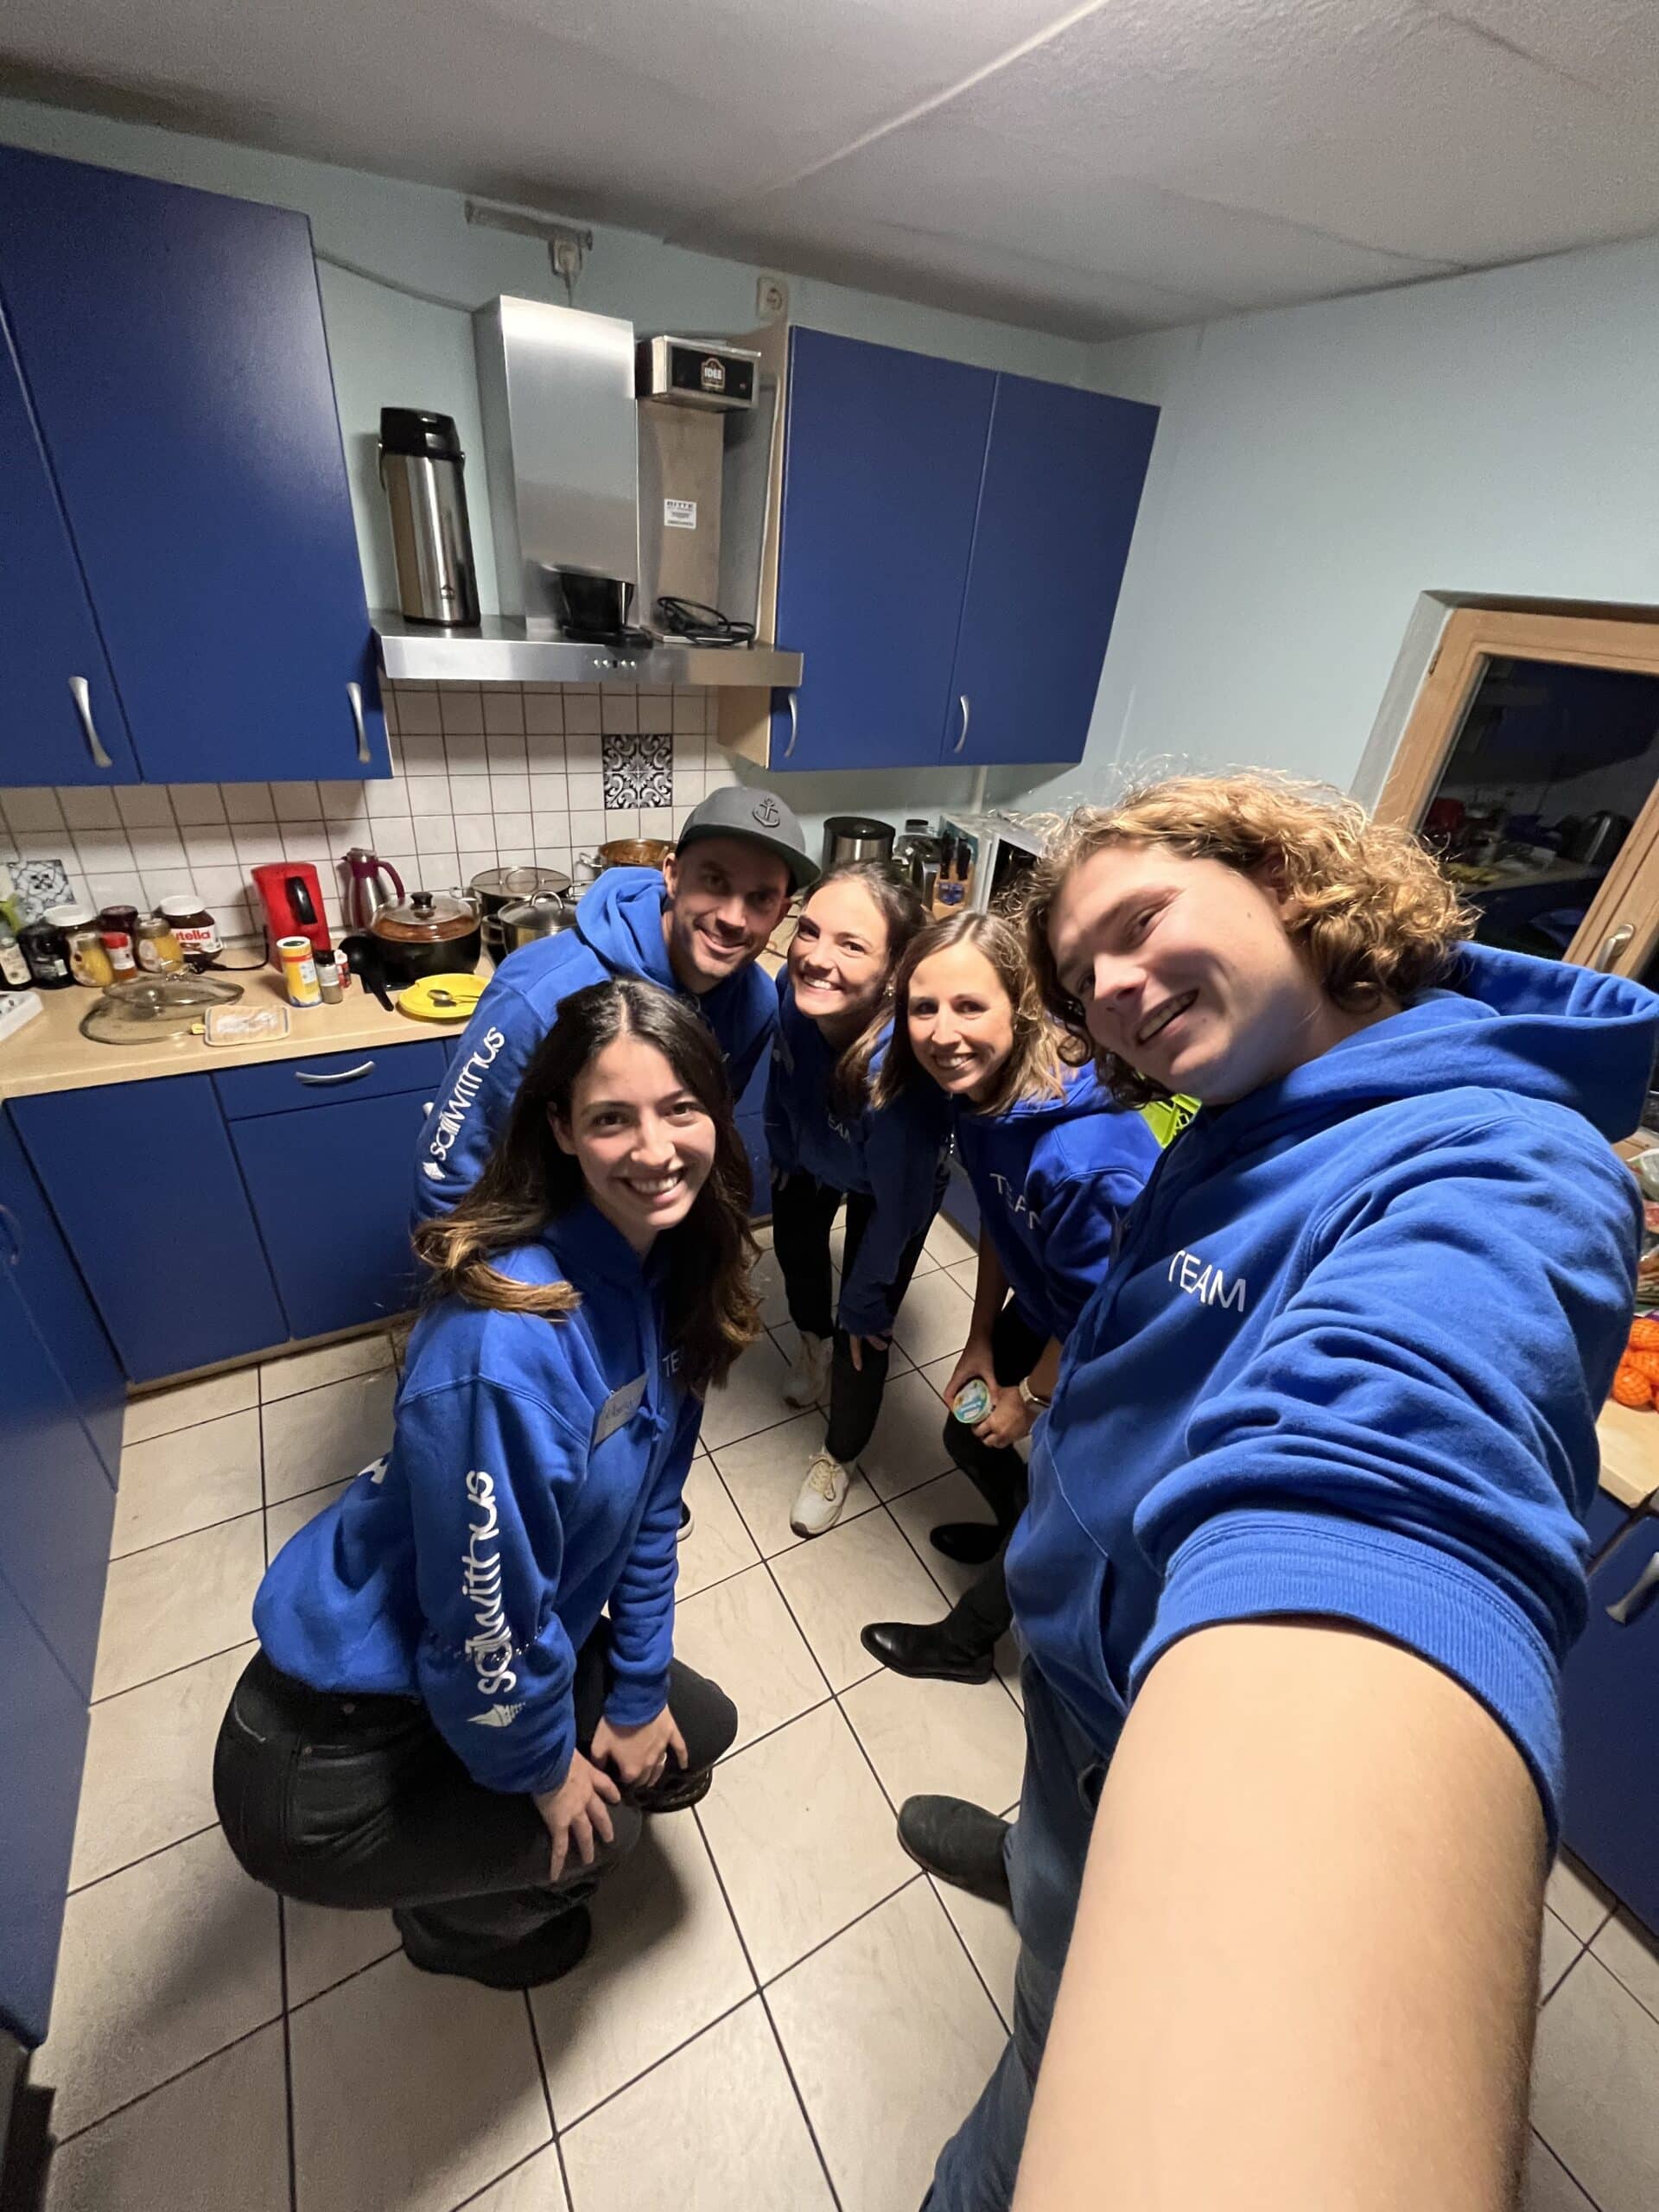 Fünf junge Erwachsene in blauen Kapuzenpullovern lächeln während ihres Segeltörns für ein Gruppen-Selfie in einer Küche mit blauen Schränken und verschiedenen Geräten im Hintergrund.